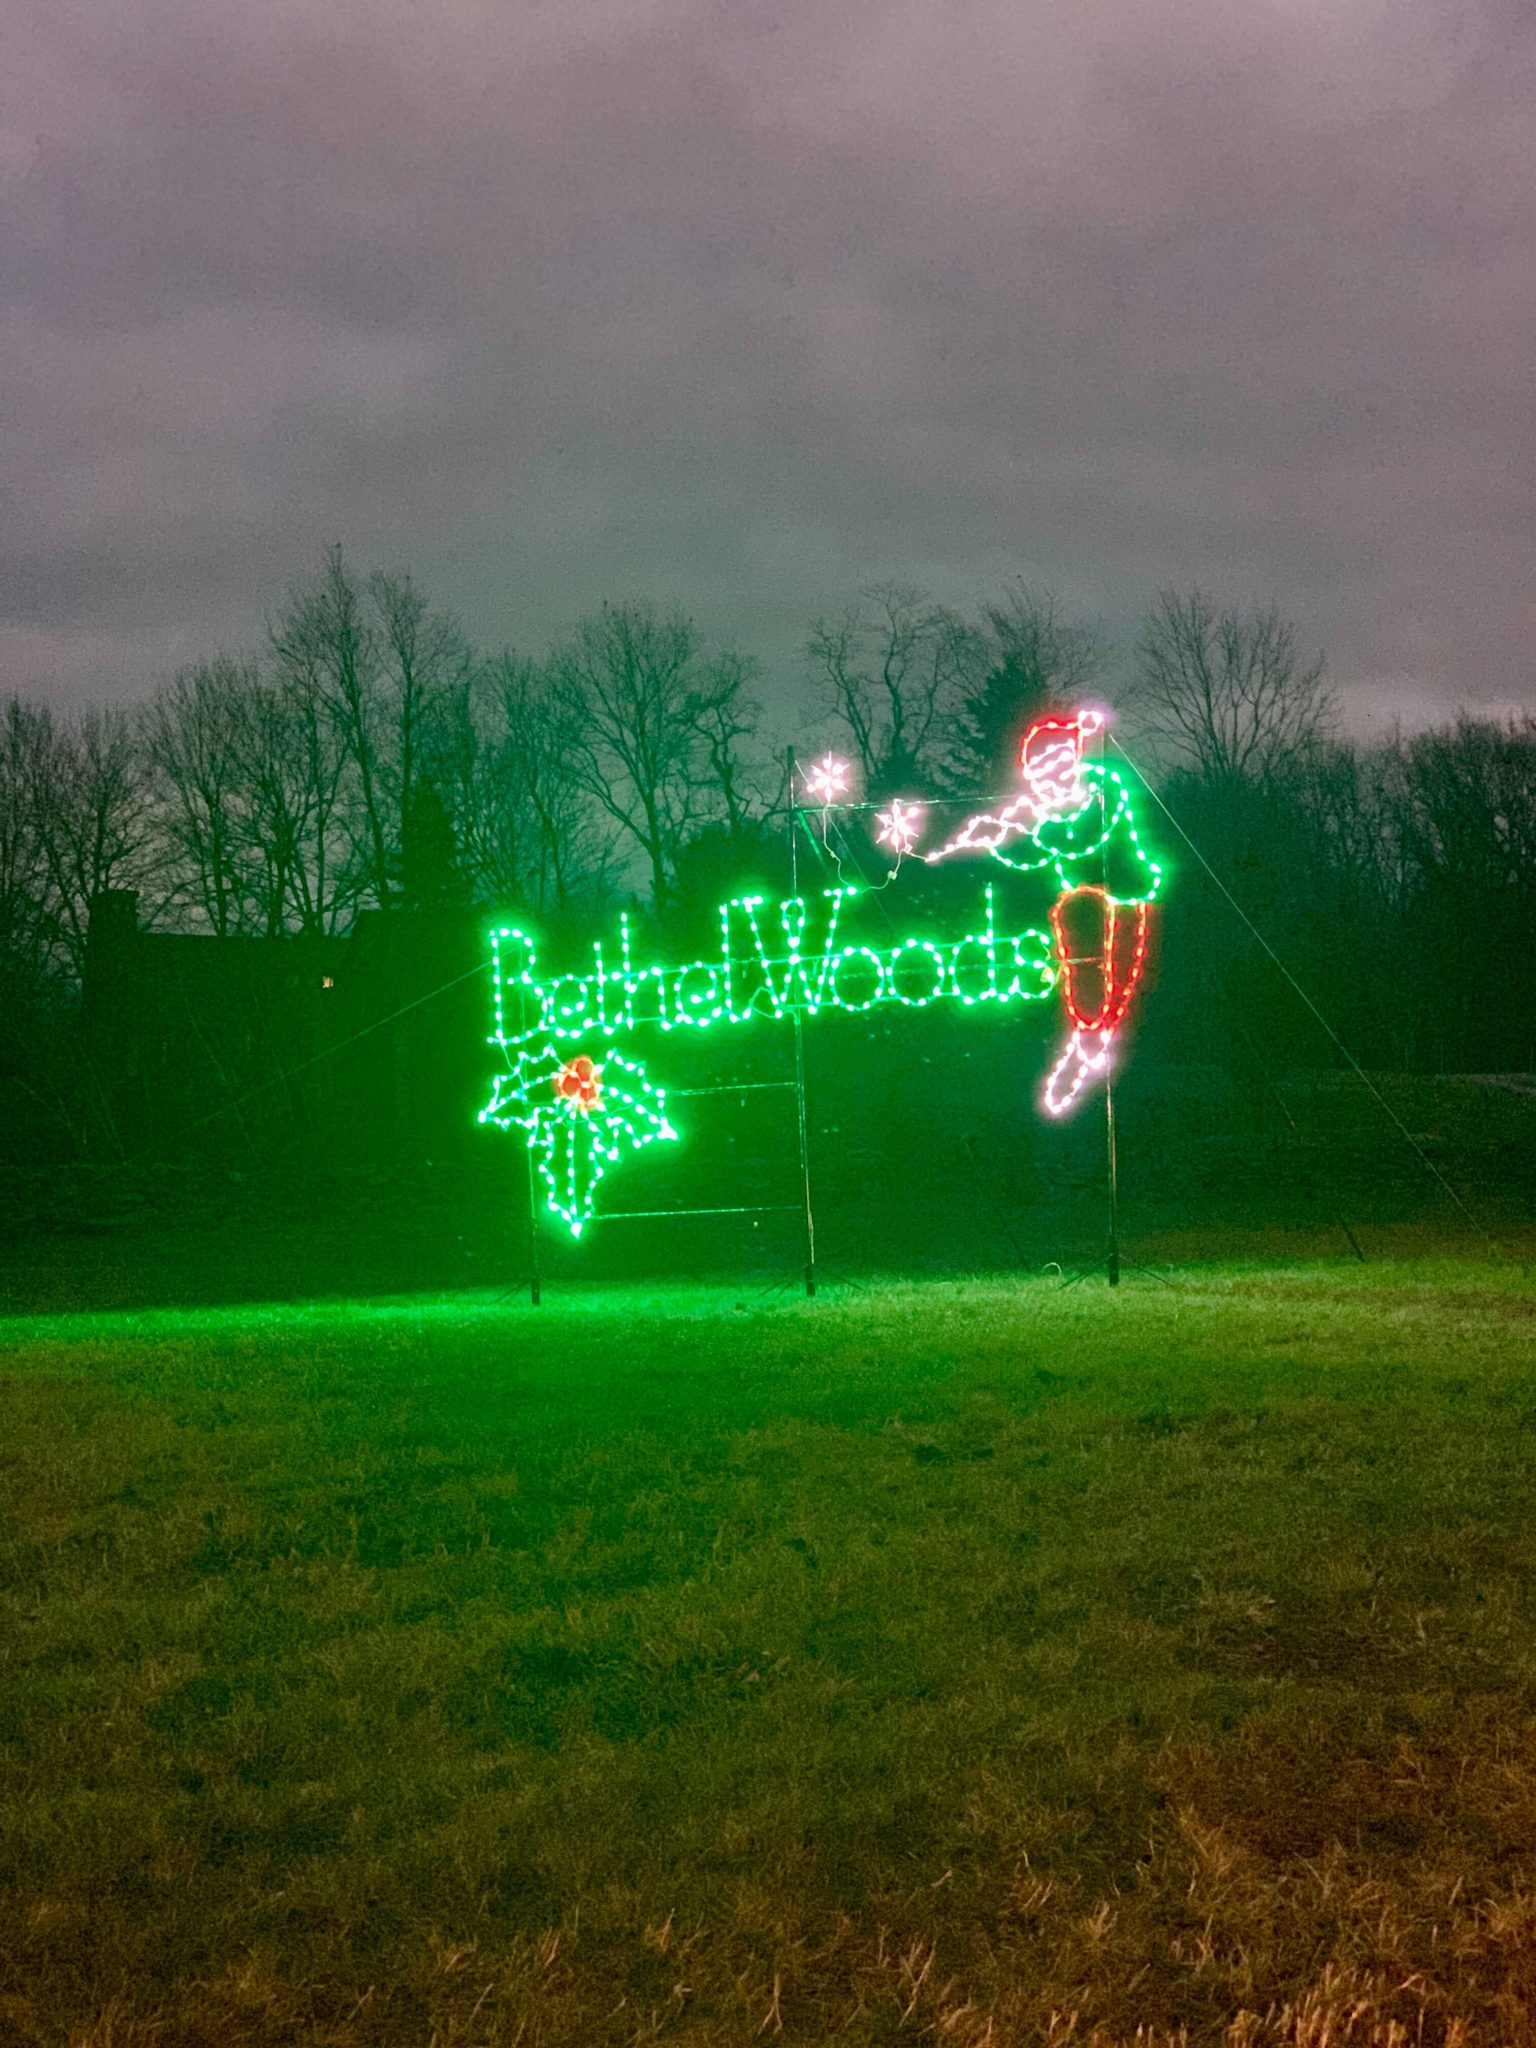 Drive Thru Bethel Woods Holiday Peace Love & Lights Sneak Peak 2020